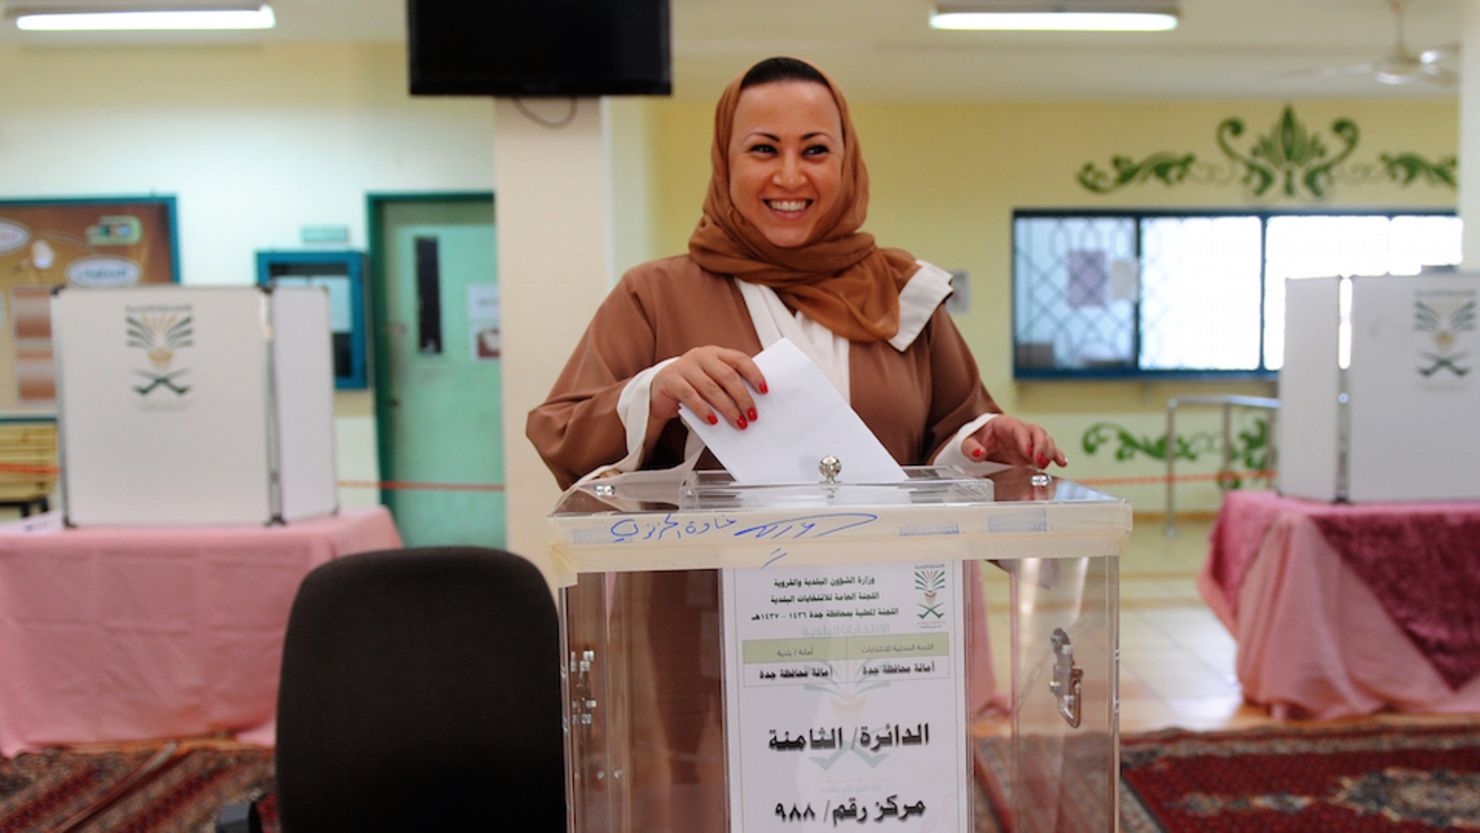 Una mujer deposita su voto en las elecciones municipales de Arabia Saudita, en las que , por primera vez, hubo candidatas y mujeres votantes.